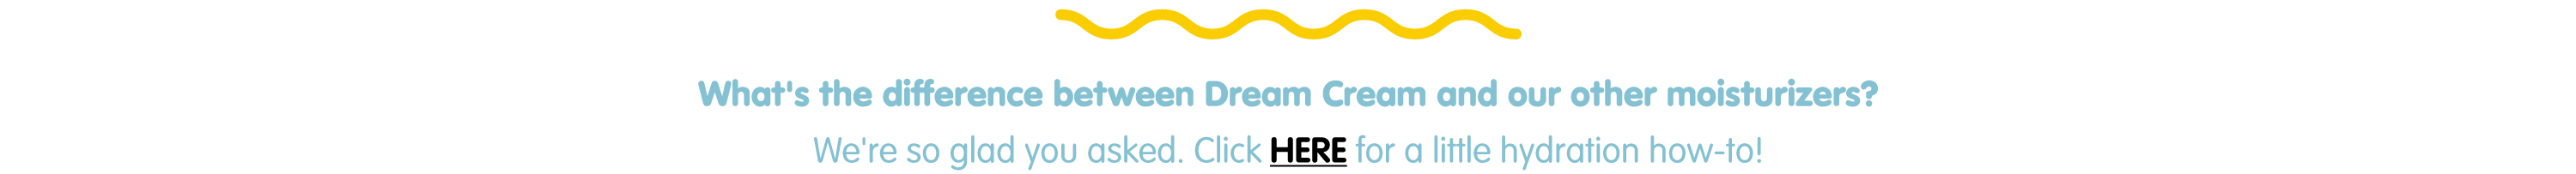 More info about Dream Cream